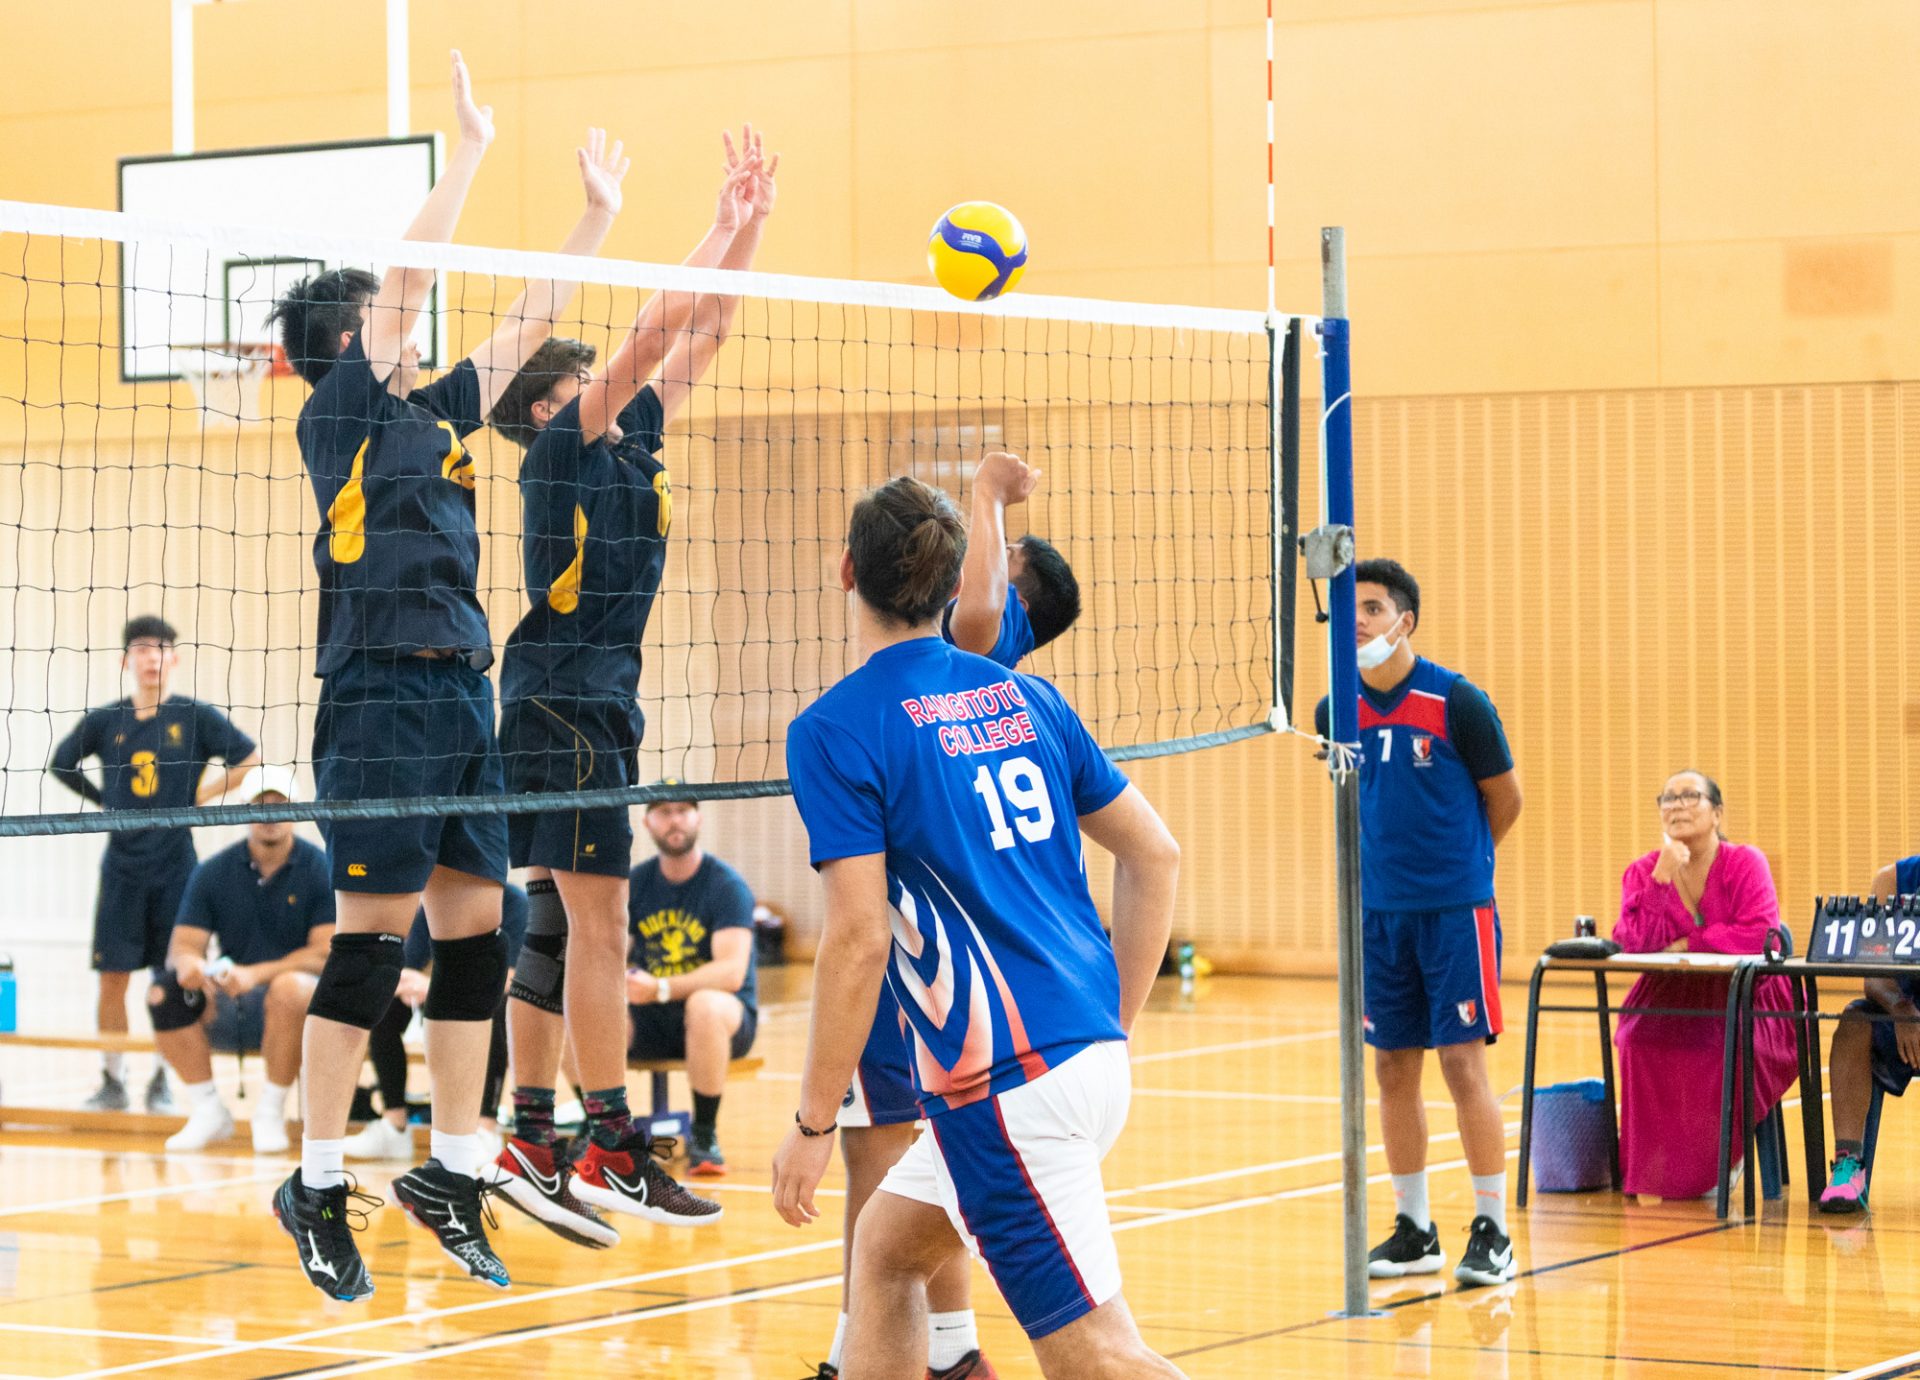 Volleyball – Auckland Grammar School